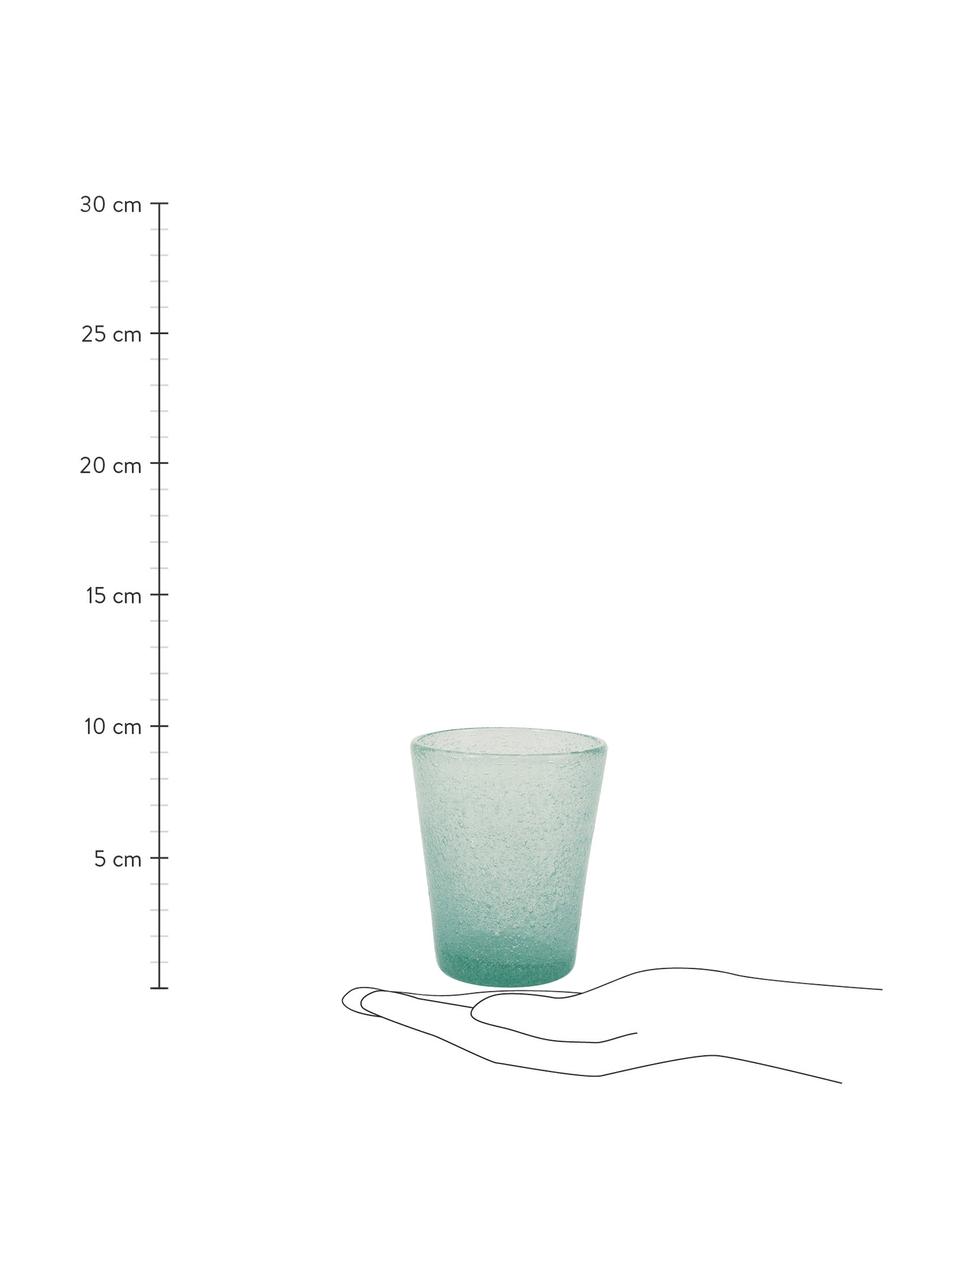 Bicchiere acqua in vetro soffiato Cancun 6 pz, Vetro soffiato, Verde, Ø 9 x Alt. 10 cm